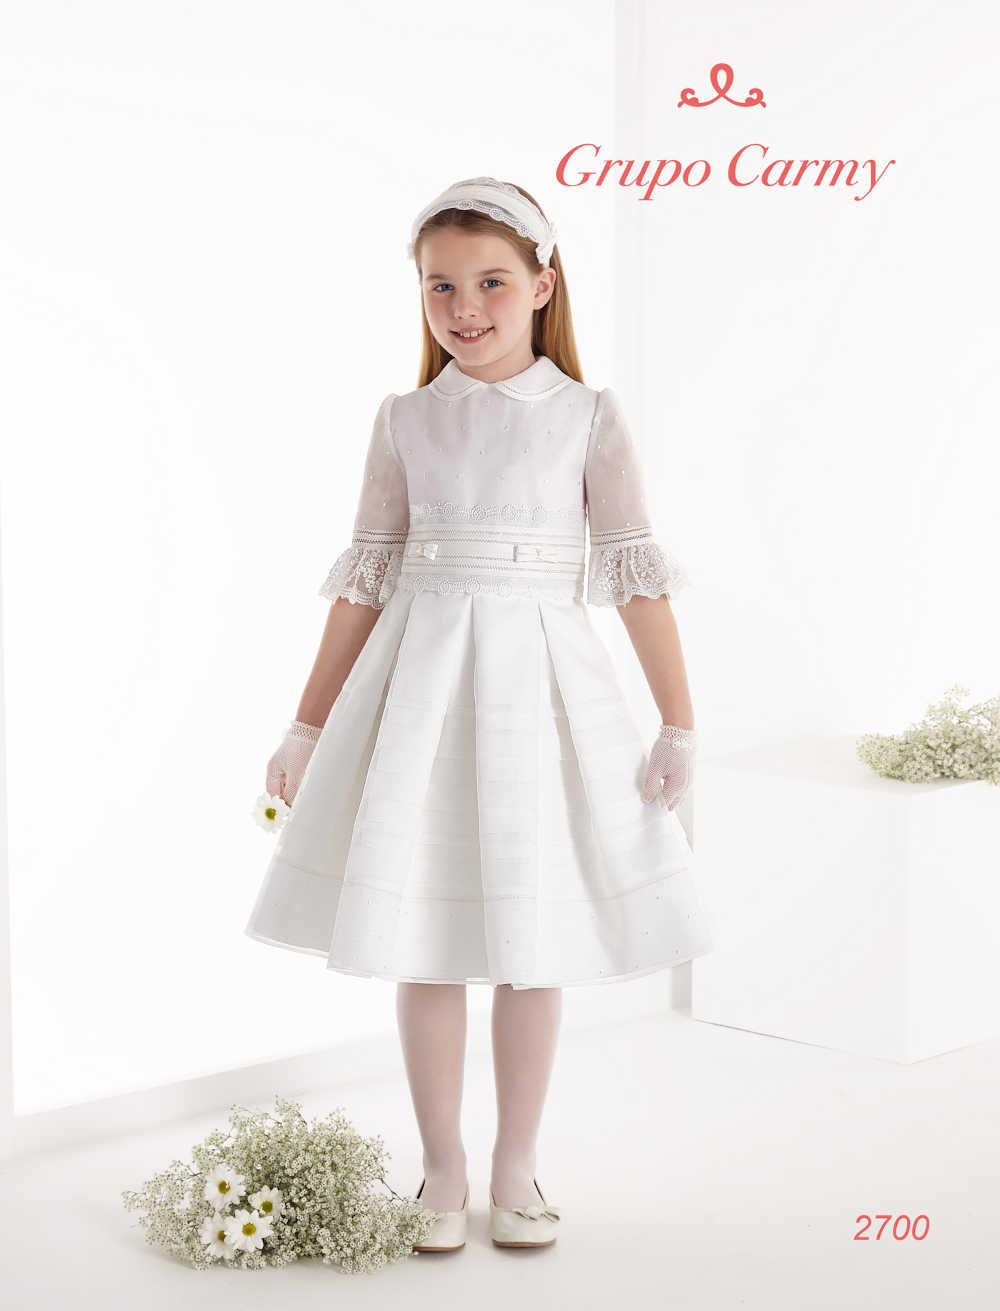 Carmy - Amore Bridal & Communion Wear